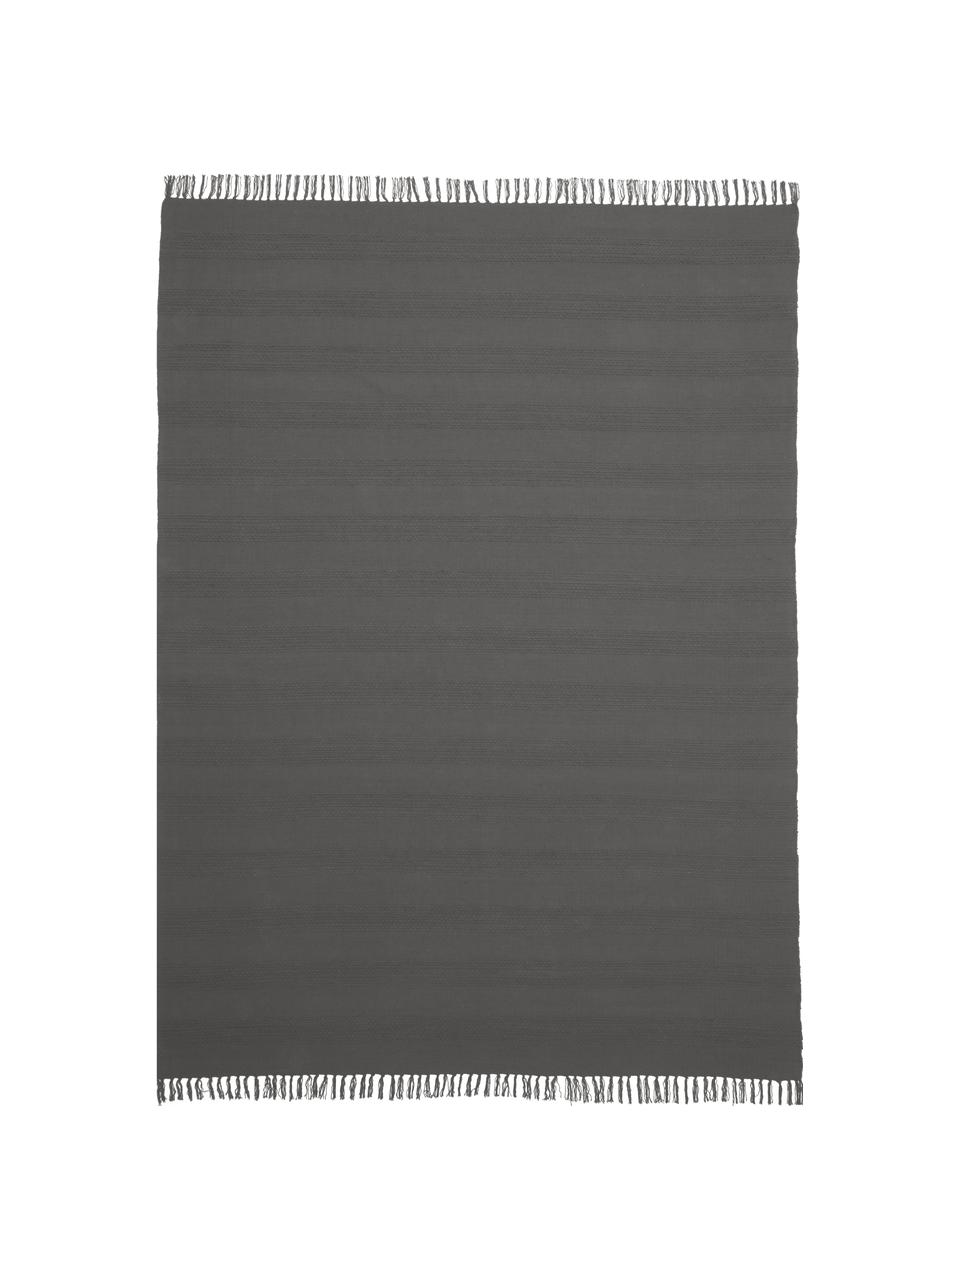 Tappeto in cotone con struttura a righe intrecciate tono su tono e frange Tanya, 100% cotone, Grigio scuro, Larg. 200 x Lung. 300 cm (taglia L)